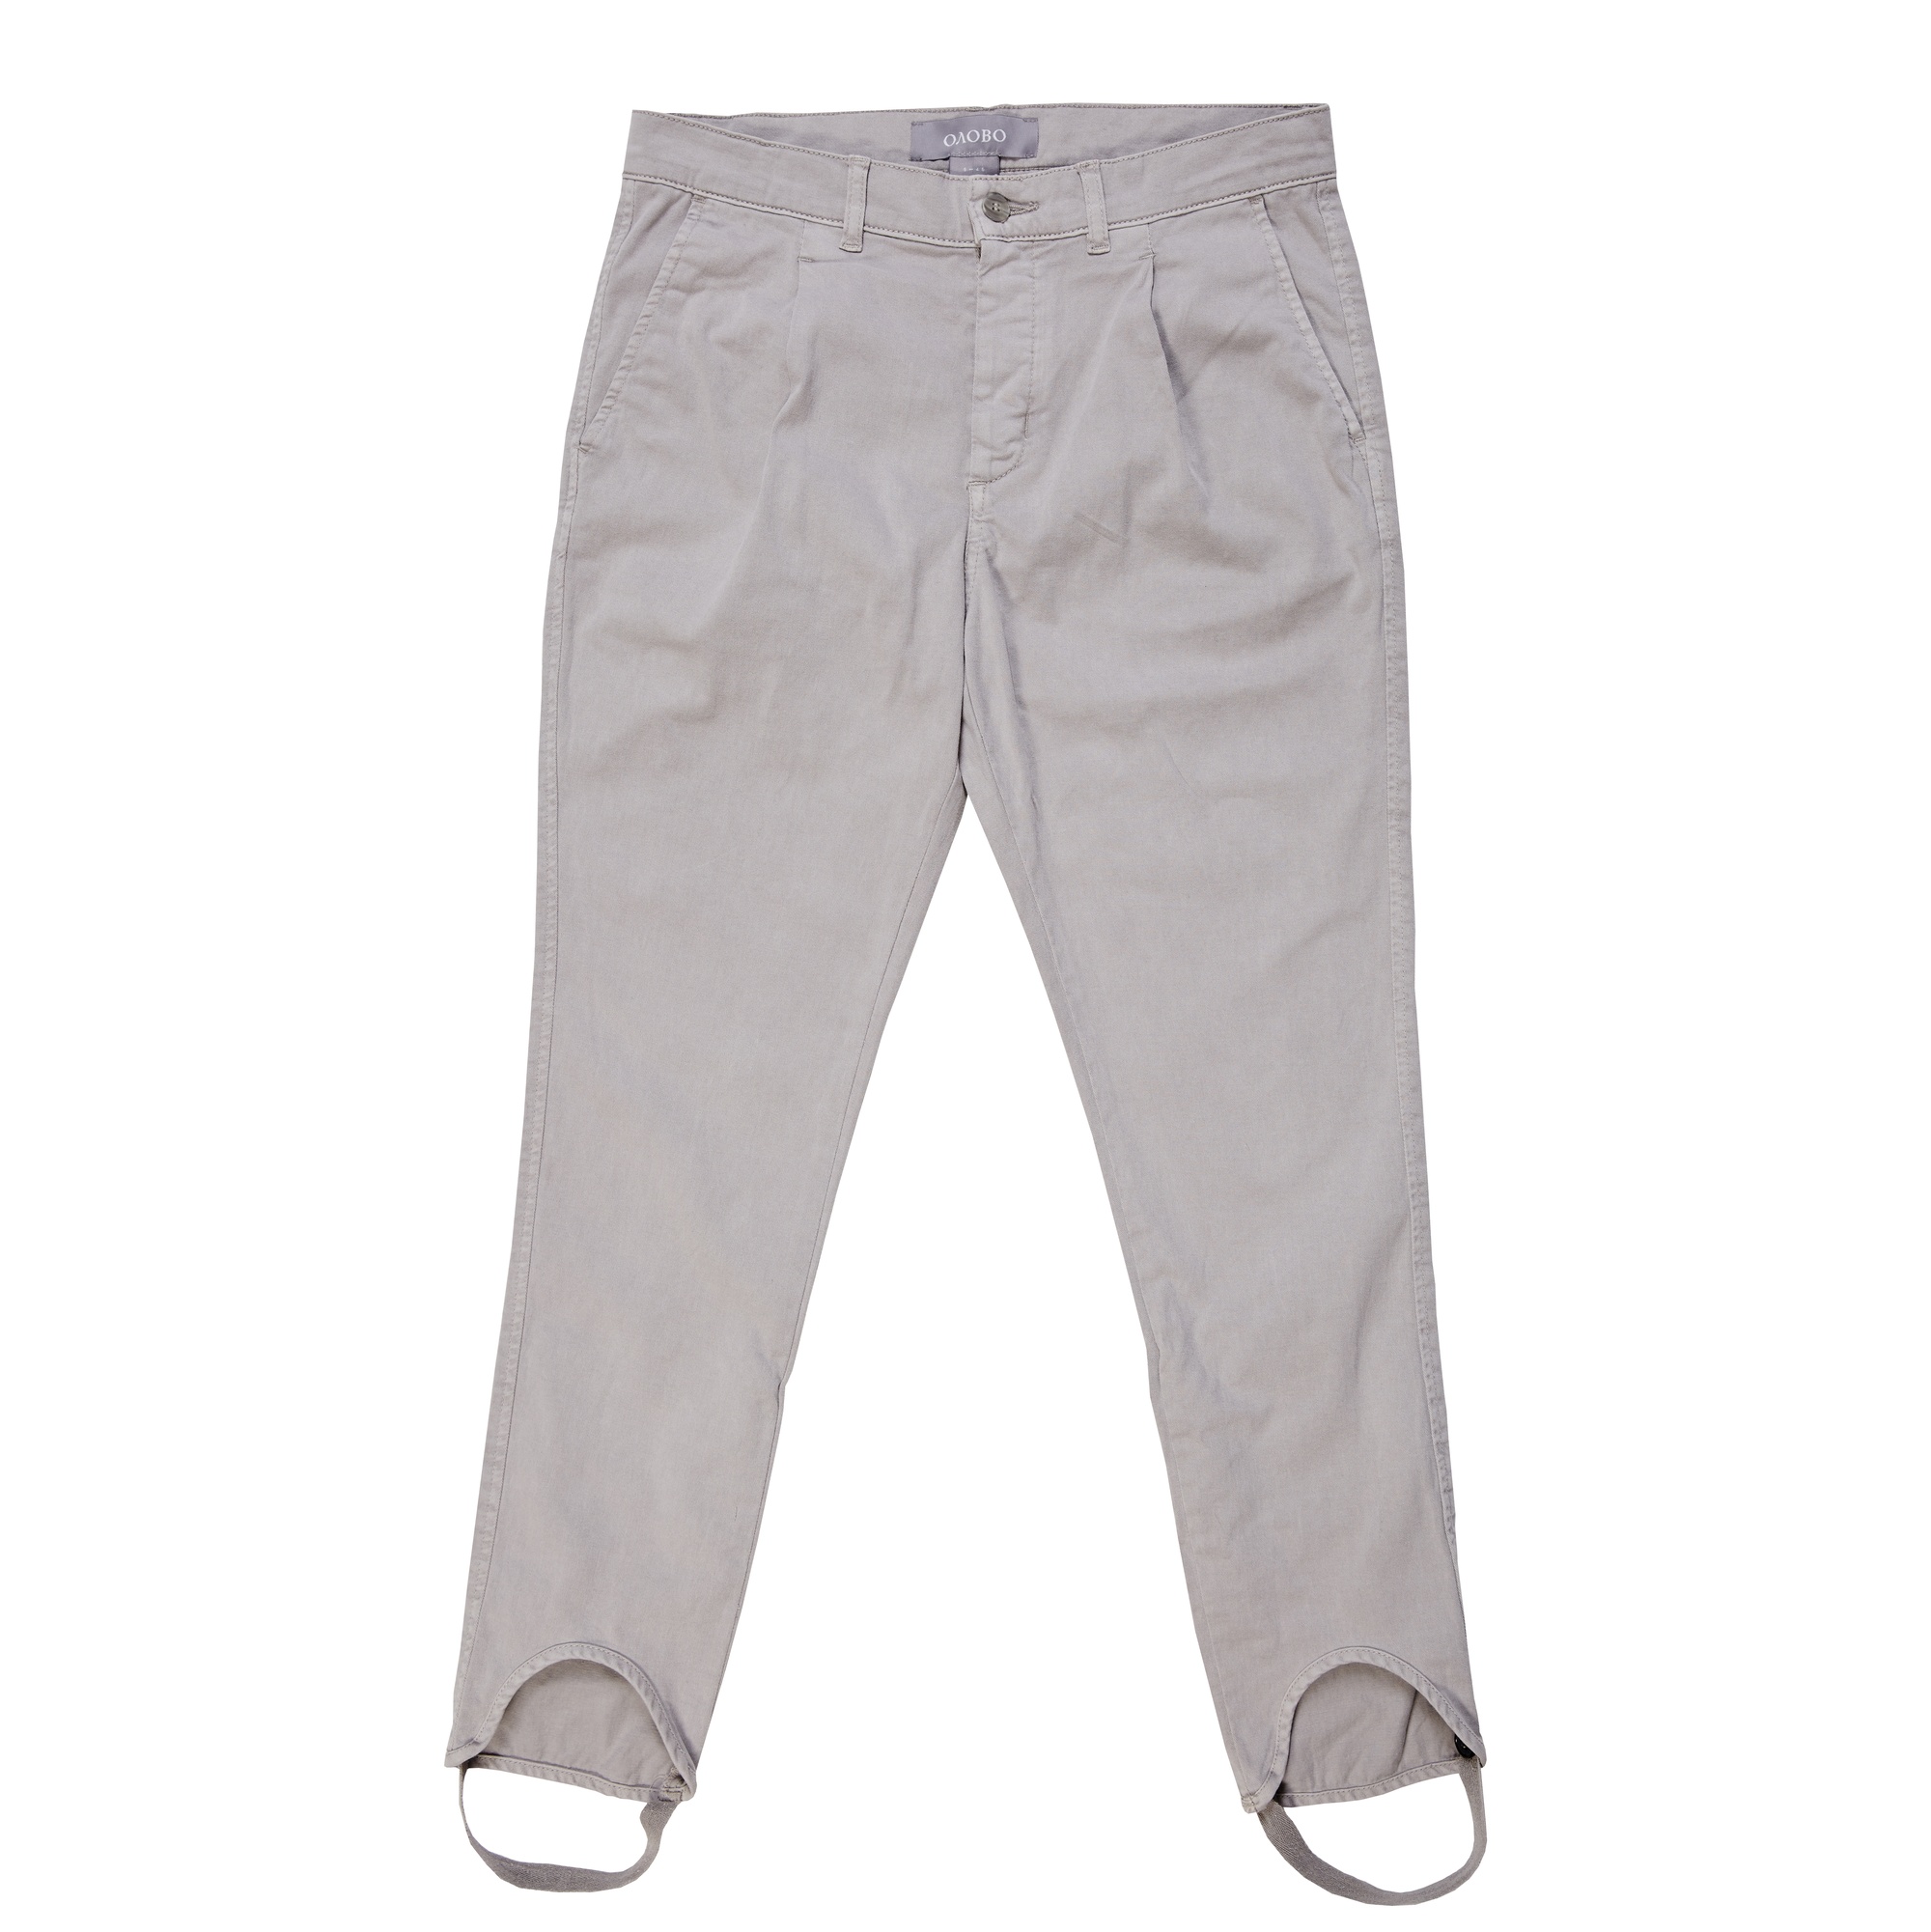 Cotton Pants (серый) - OLOVO